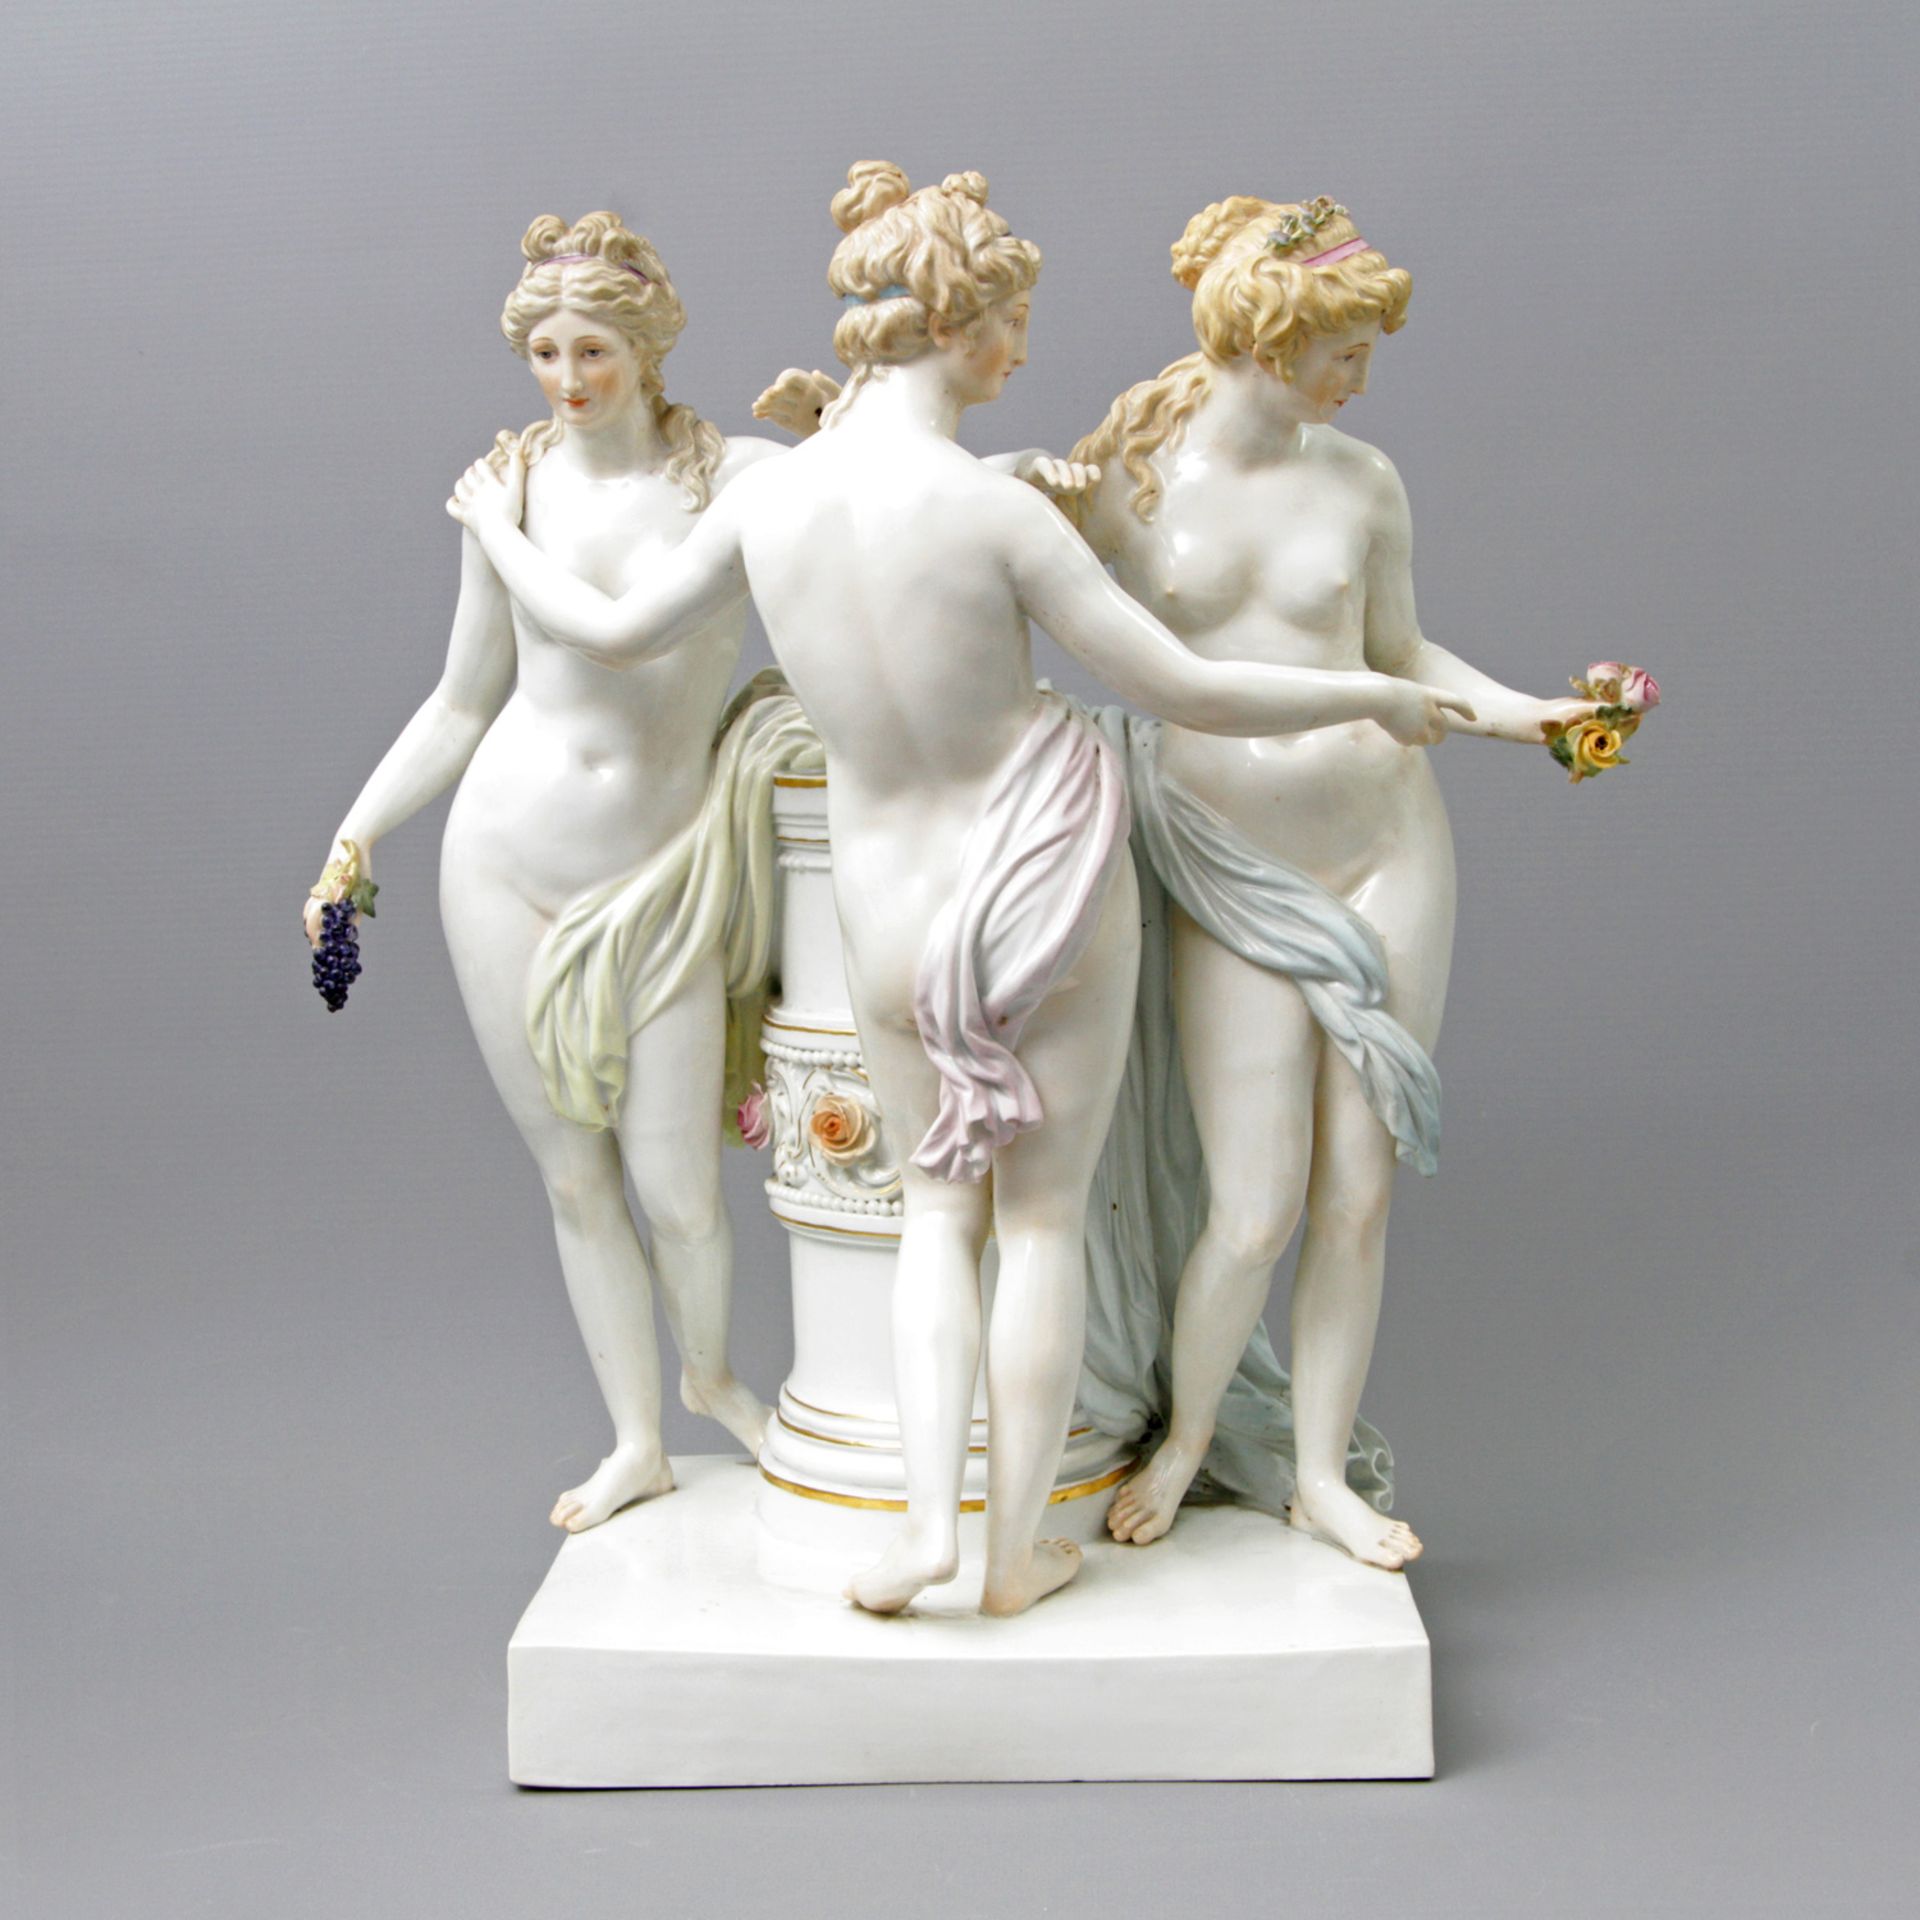 MEISSEN herausragende Figurengruppe "Die drei Grazien", 1. H. 20.Jh., 2. Wahl. Entwurf von Johann